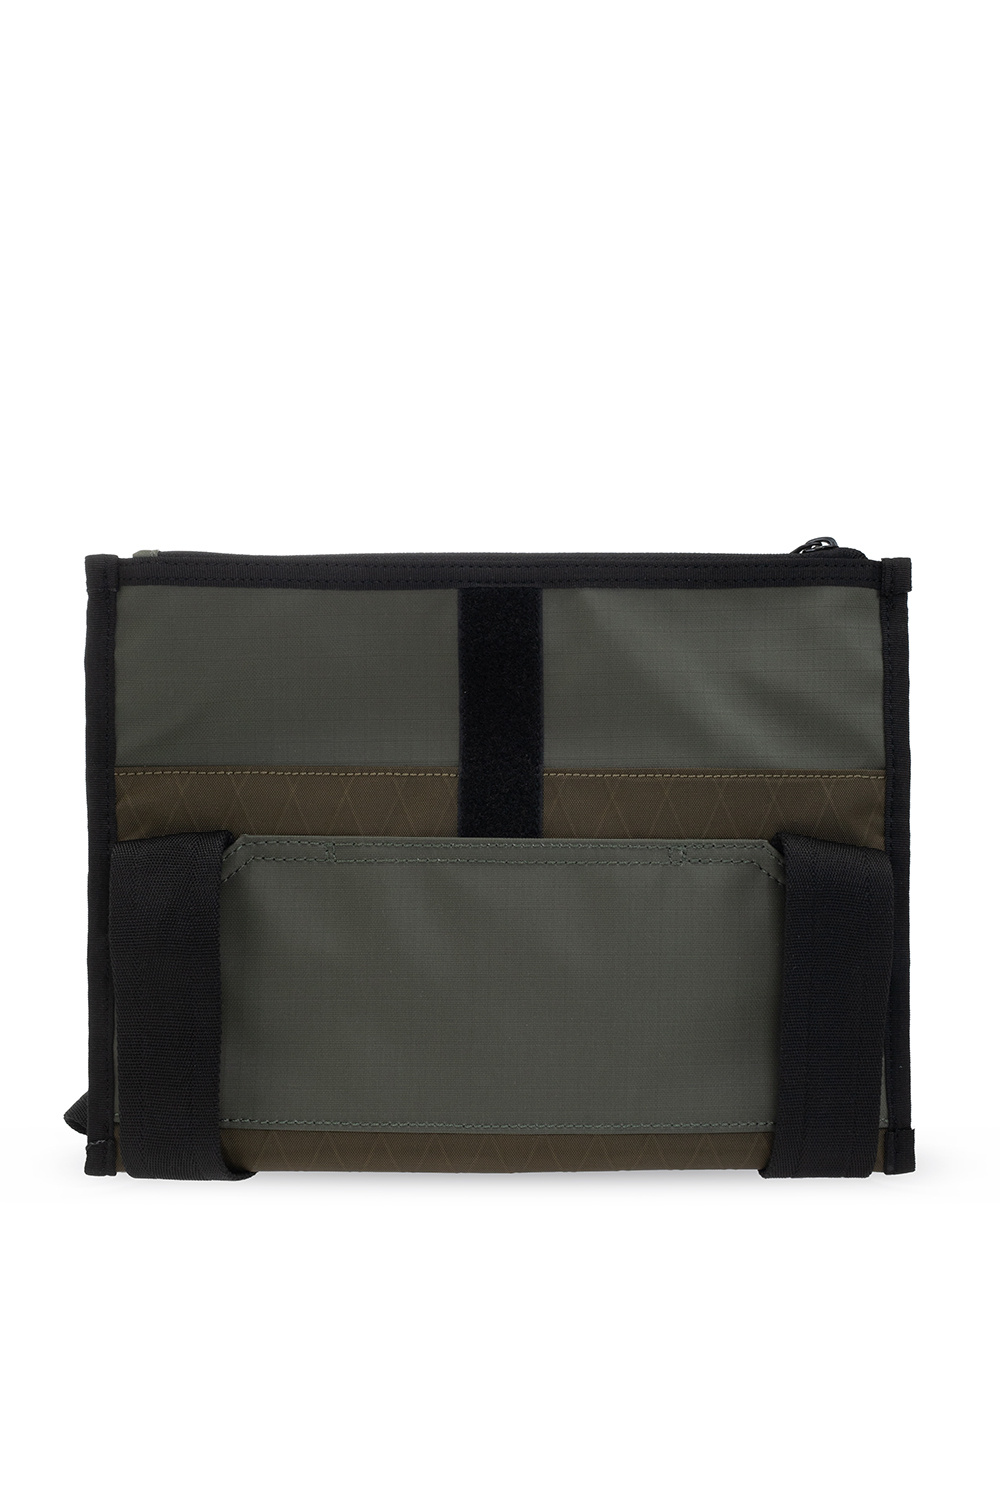 Diesel ‘Iga’ shoulder bag